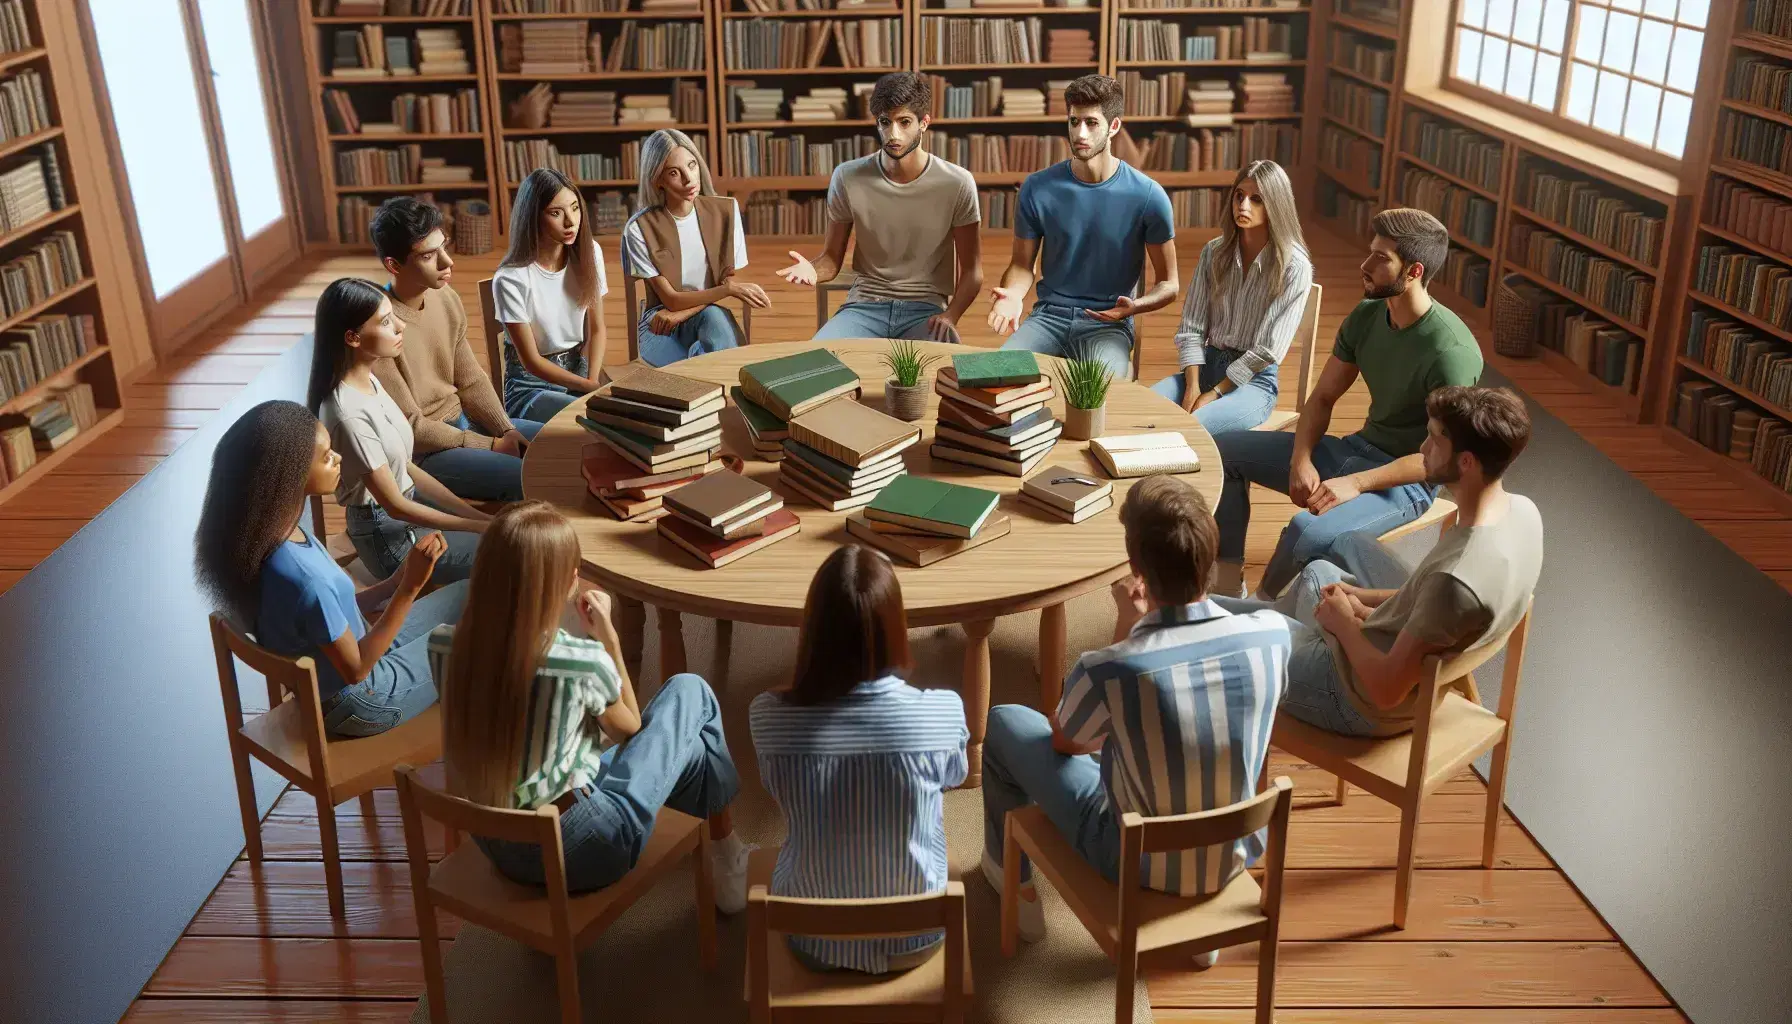 Estudiantes diversos en círculo en biblioteca discutiendo con libros en mesa, luz natural, ambiente de estudio y participación activa.